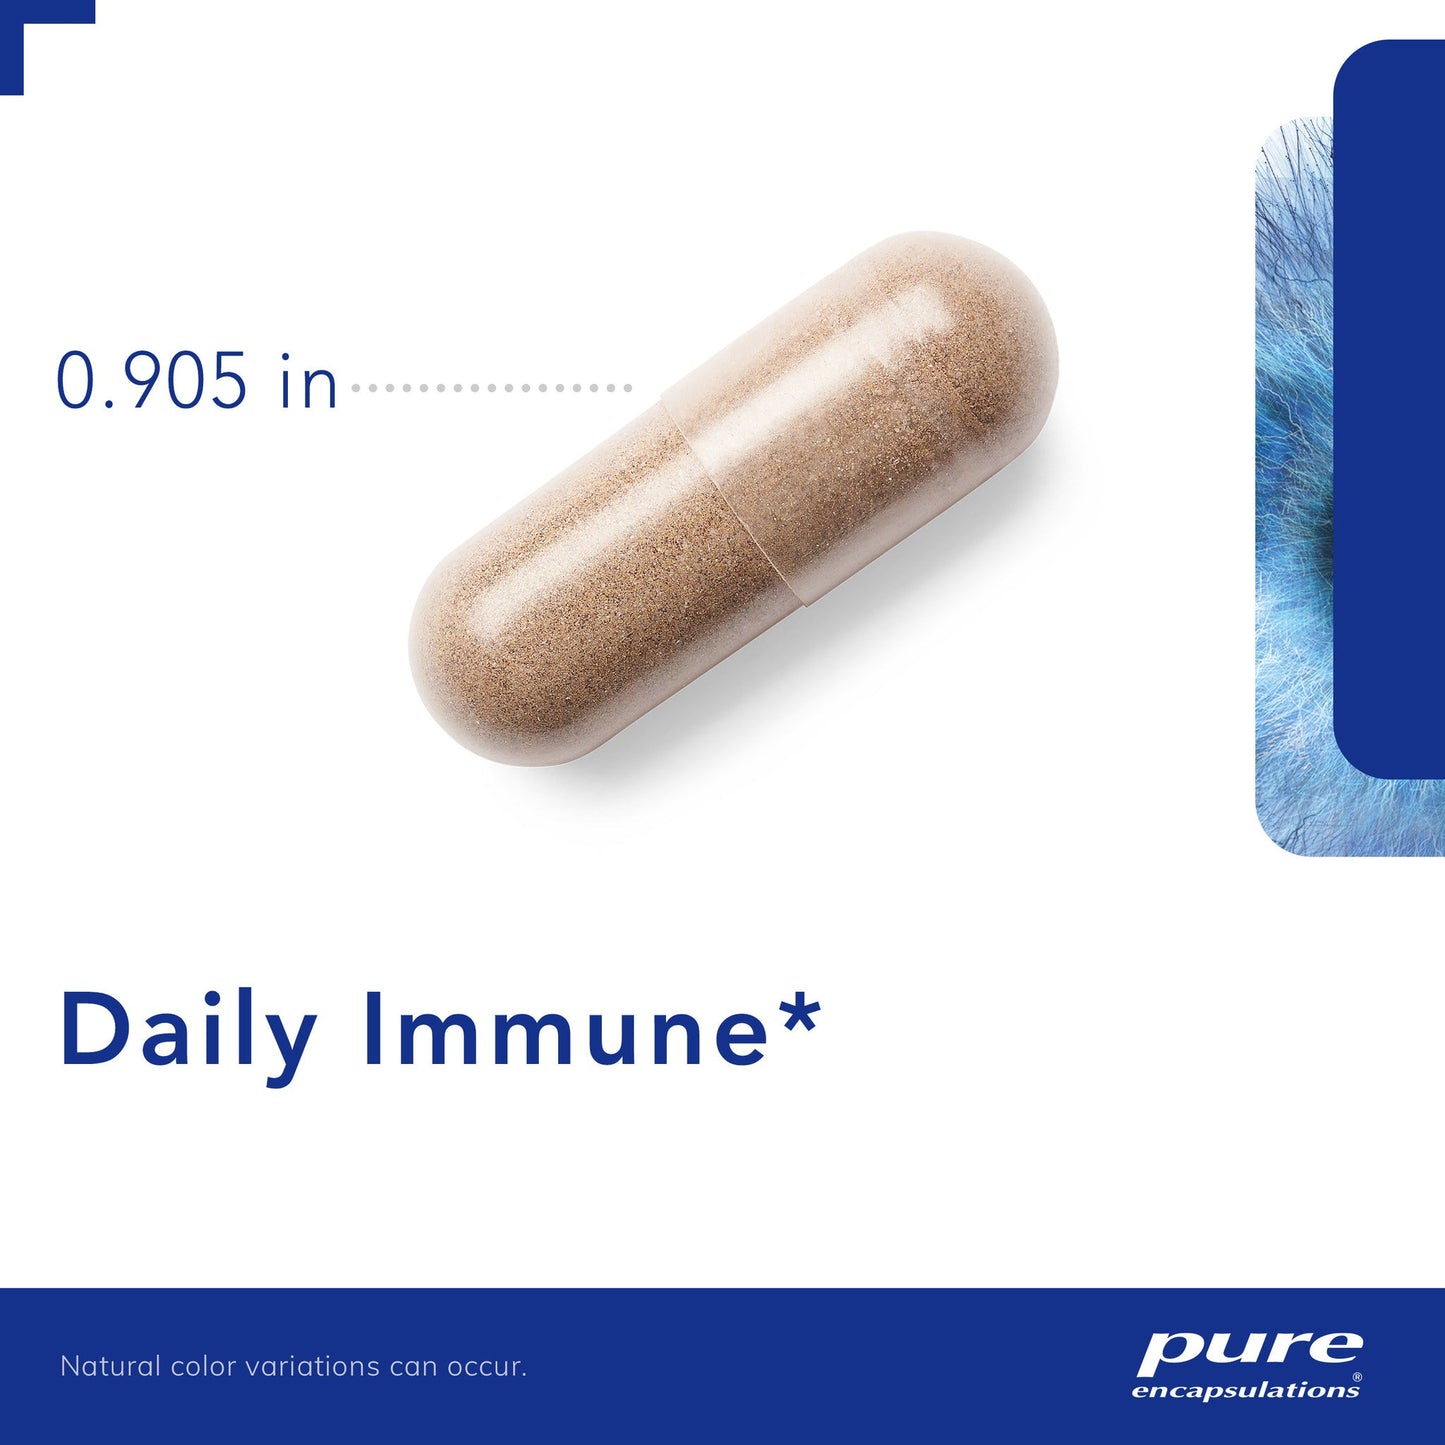 Daily Immune‡